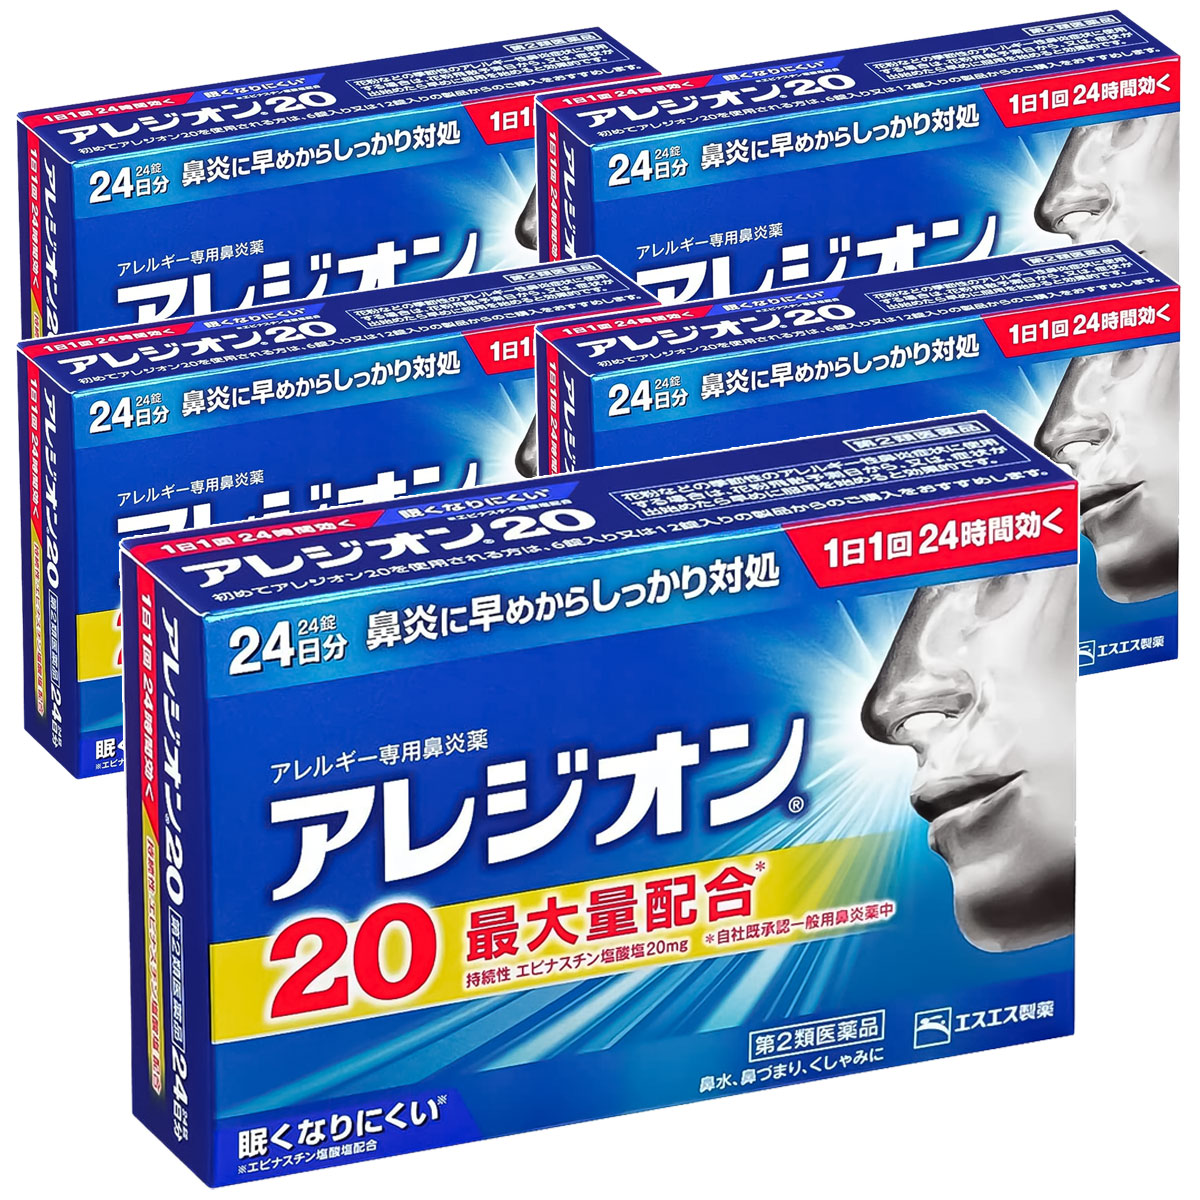 エスエス製薬 エスエス製薬 アレジオン20 24錠×5個 アレジオン 鼻炎薬の商品画像